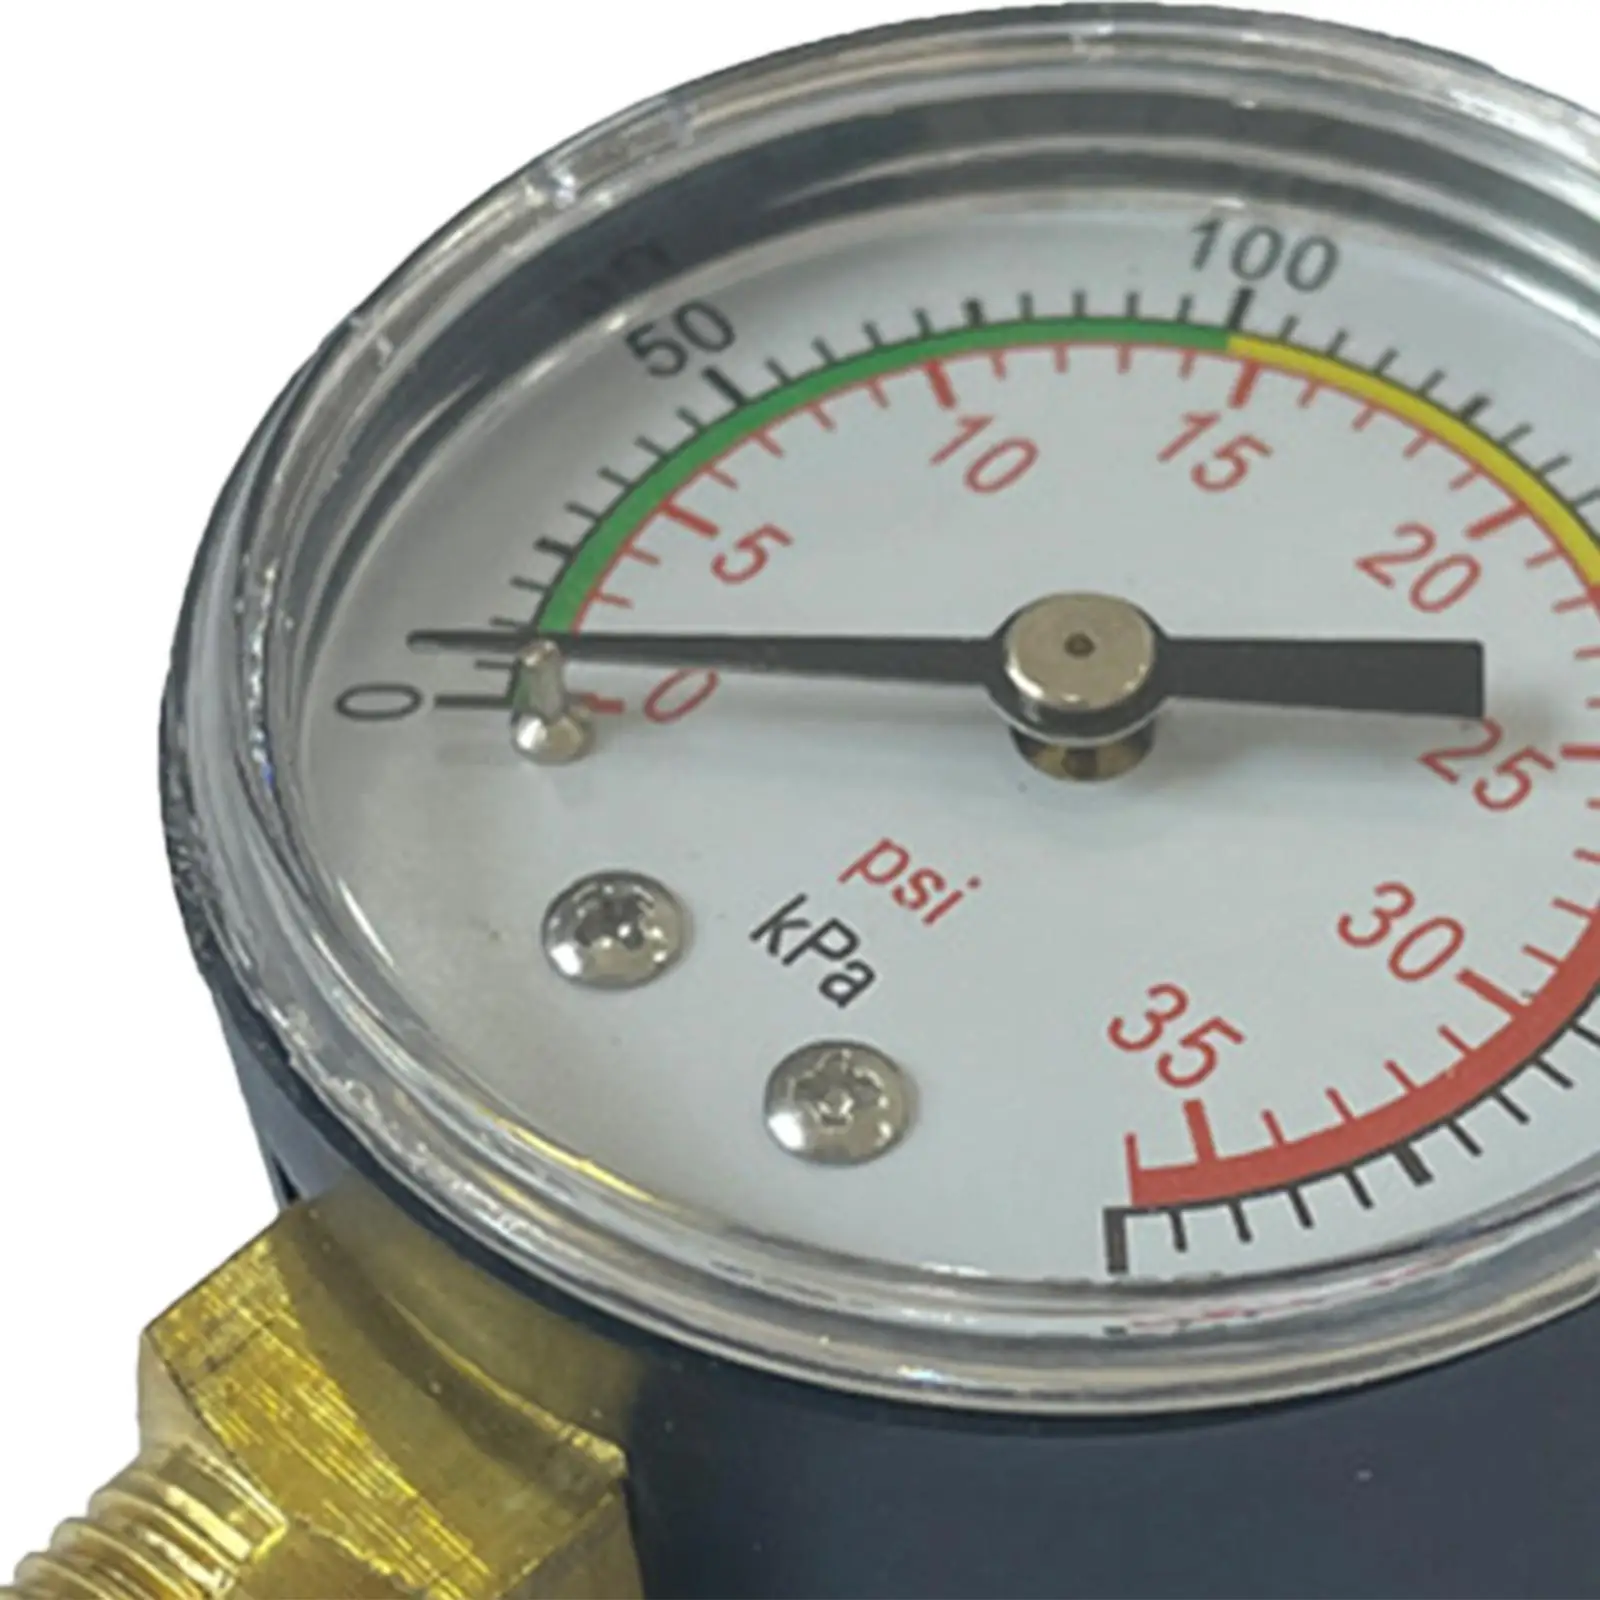 Pressure Gauge for Swimming Pool Pool Sand Filter Pressure Gauge Breeder Box Strainers Pressure Gauge